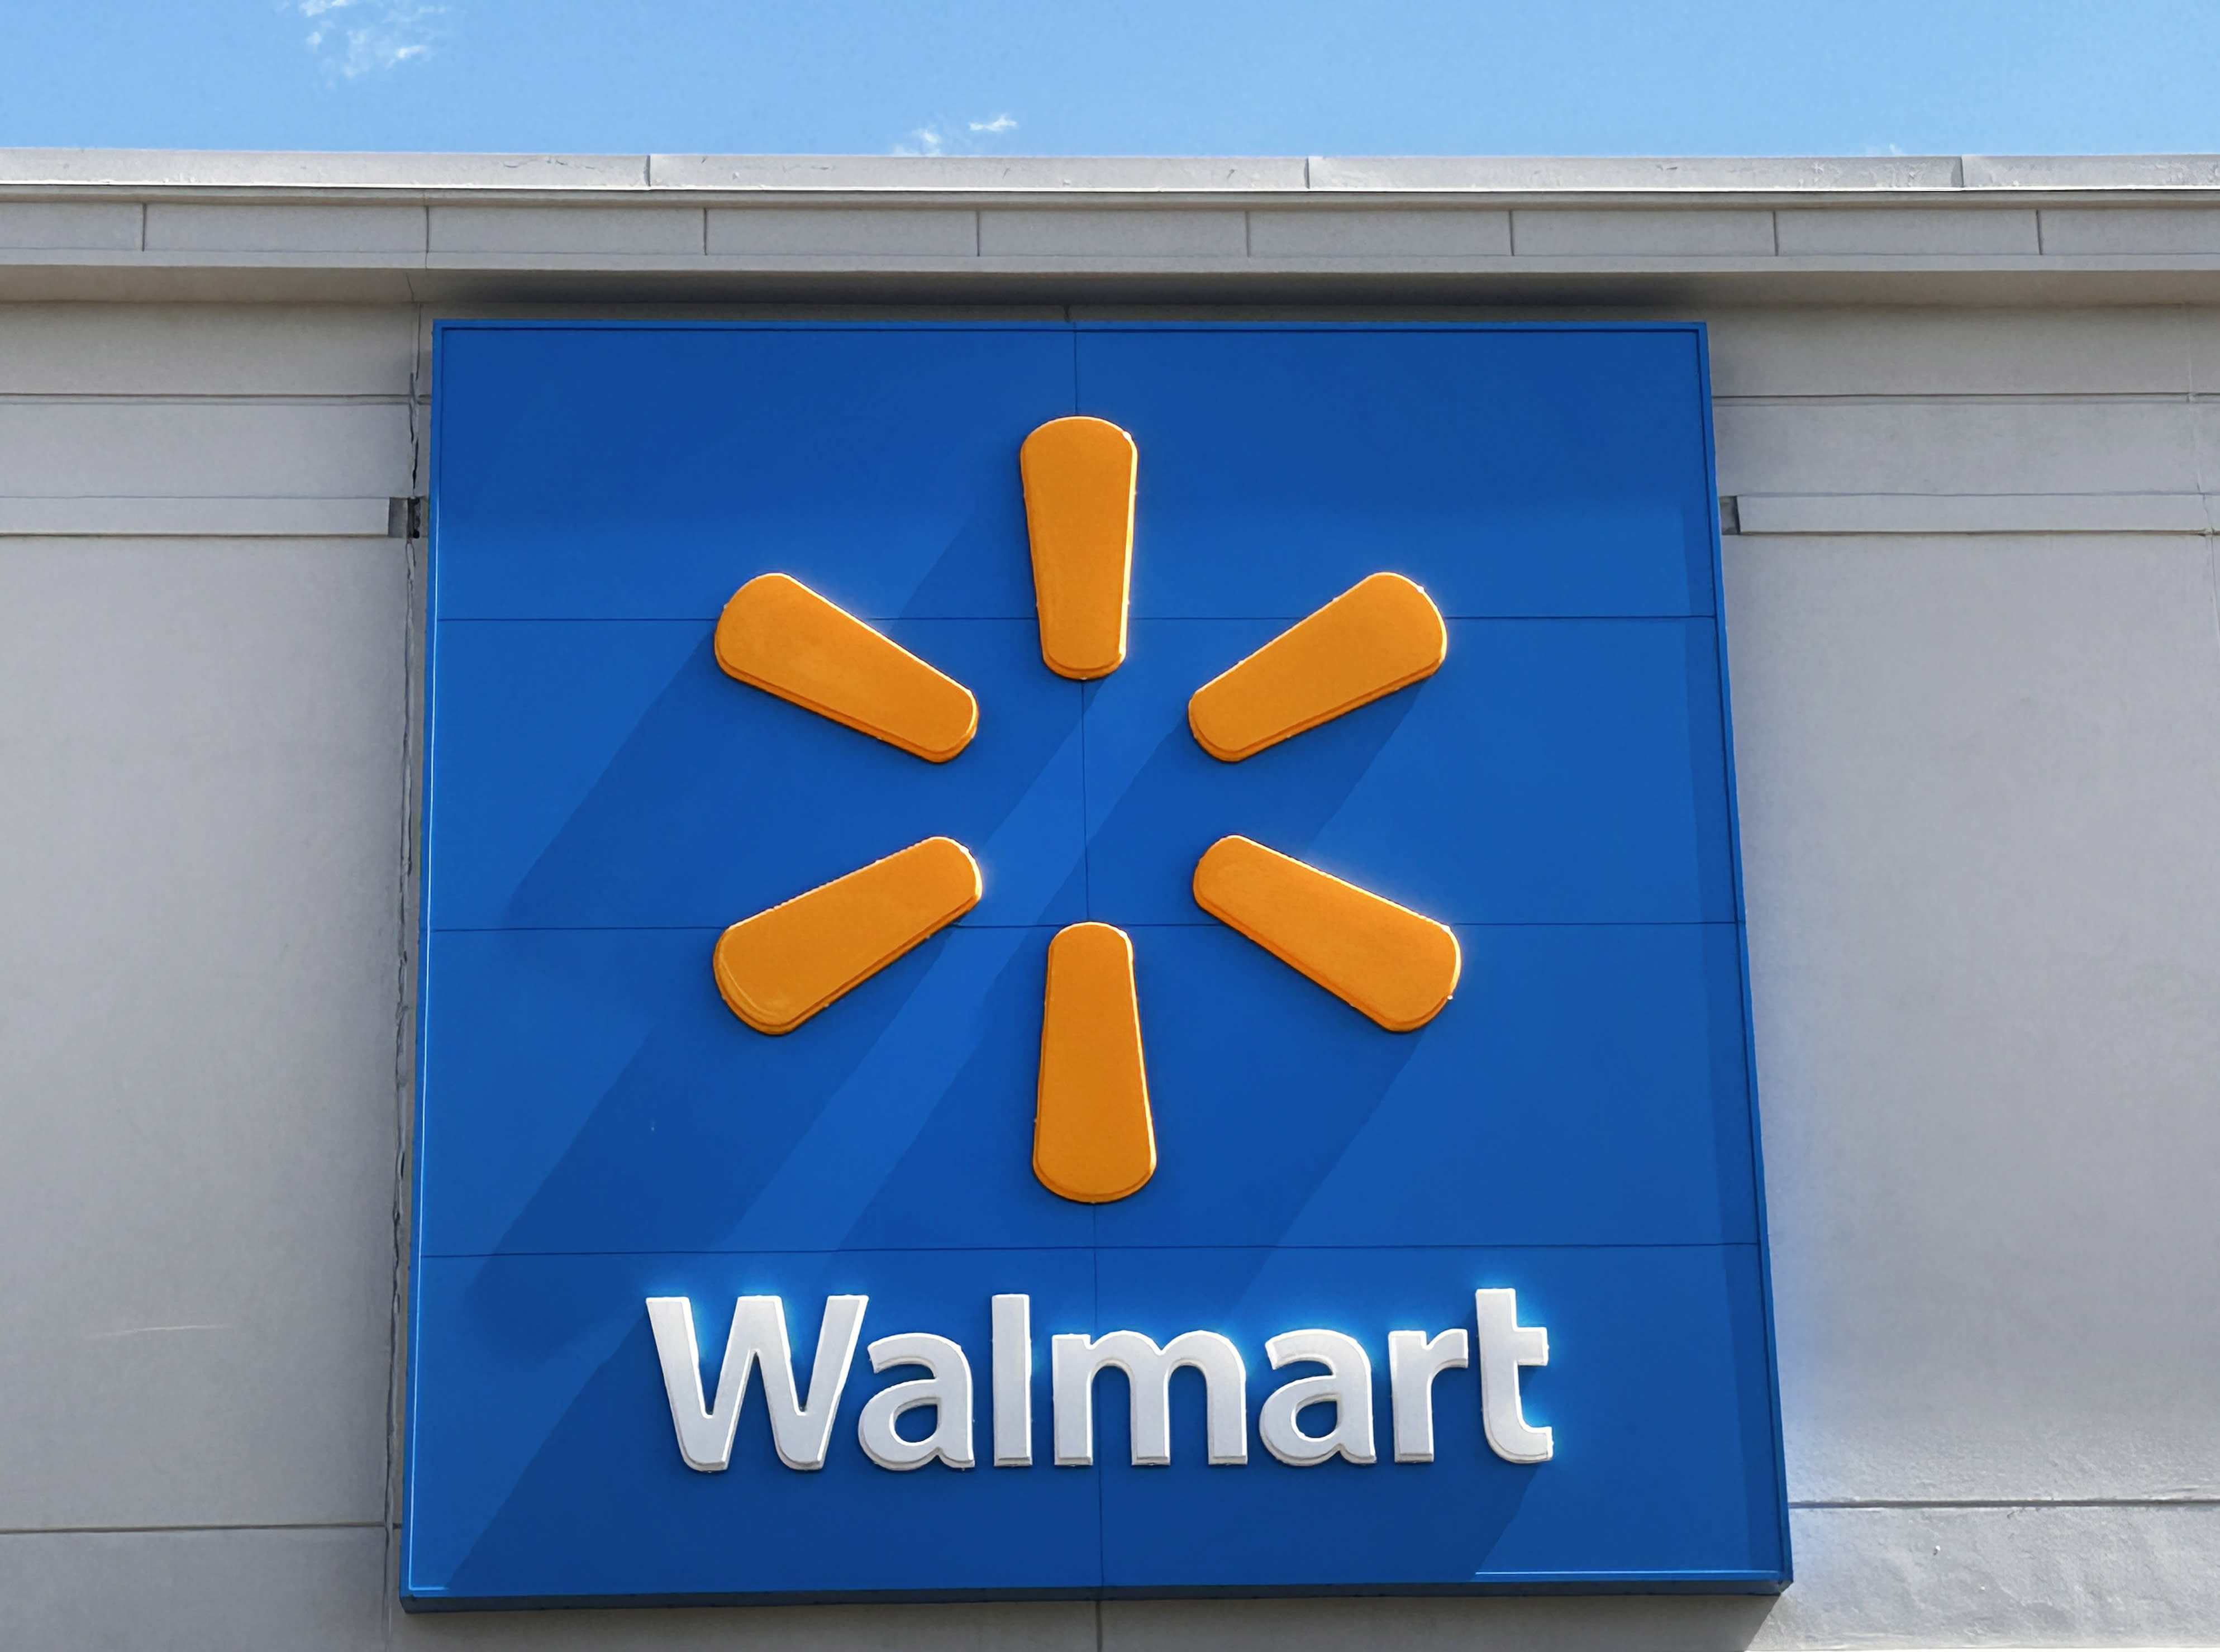 Según se informa, Walmart planea despedir a cientos de empleados de la empresa y reubicar a otros